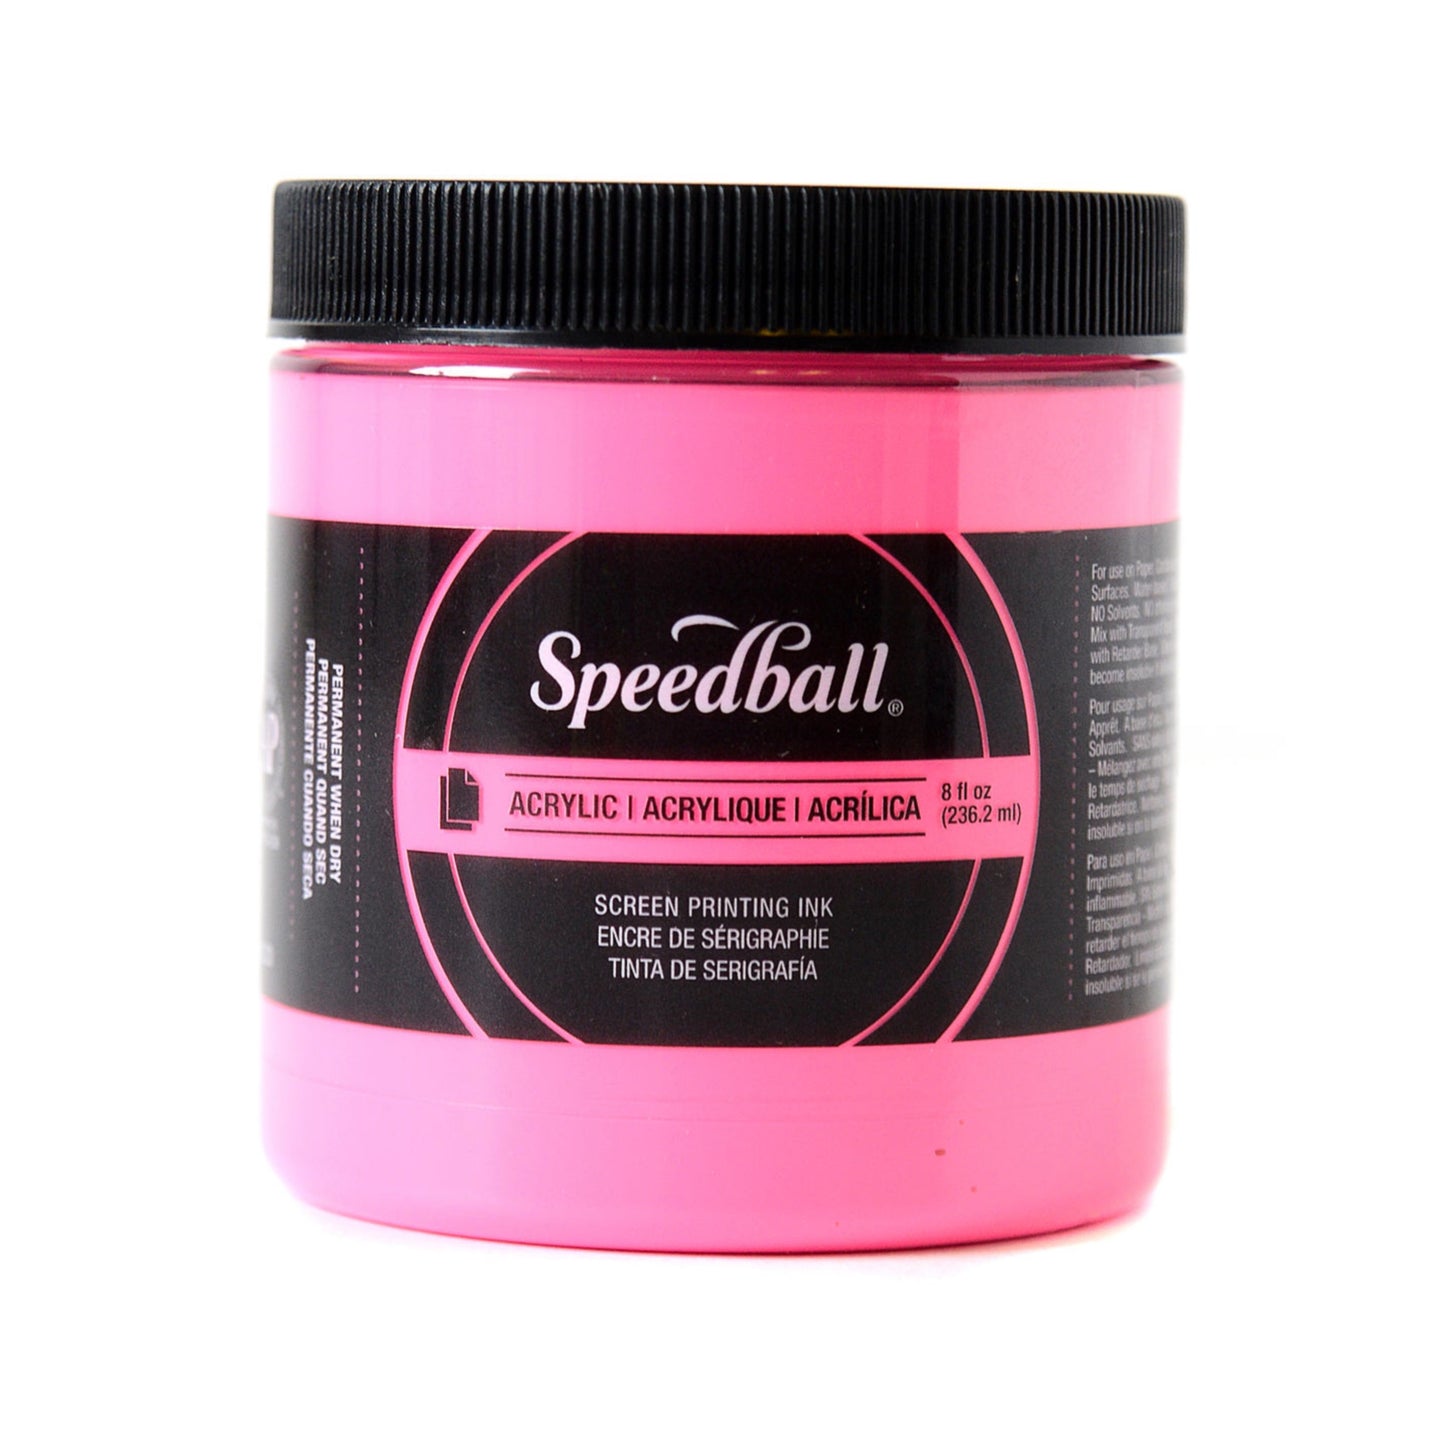 Speedball Acrylic Screen Printing Ink - 8 oz. - Fluorescent Hot Pink by Speedball - K. A. Artist Shop